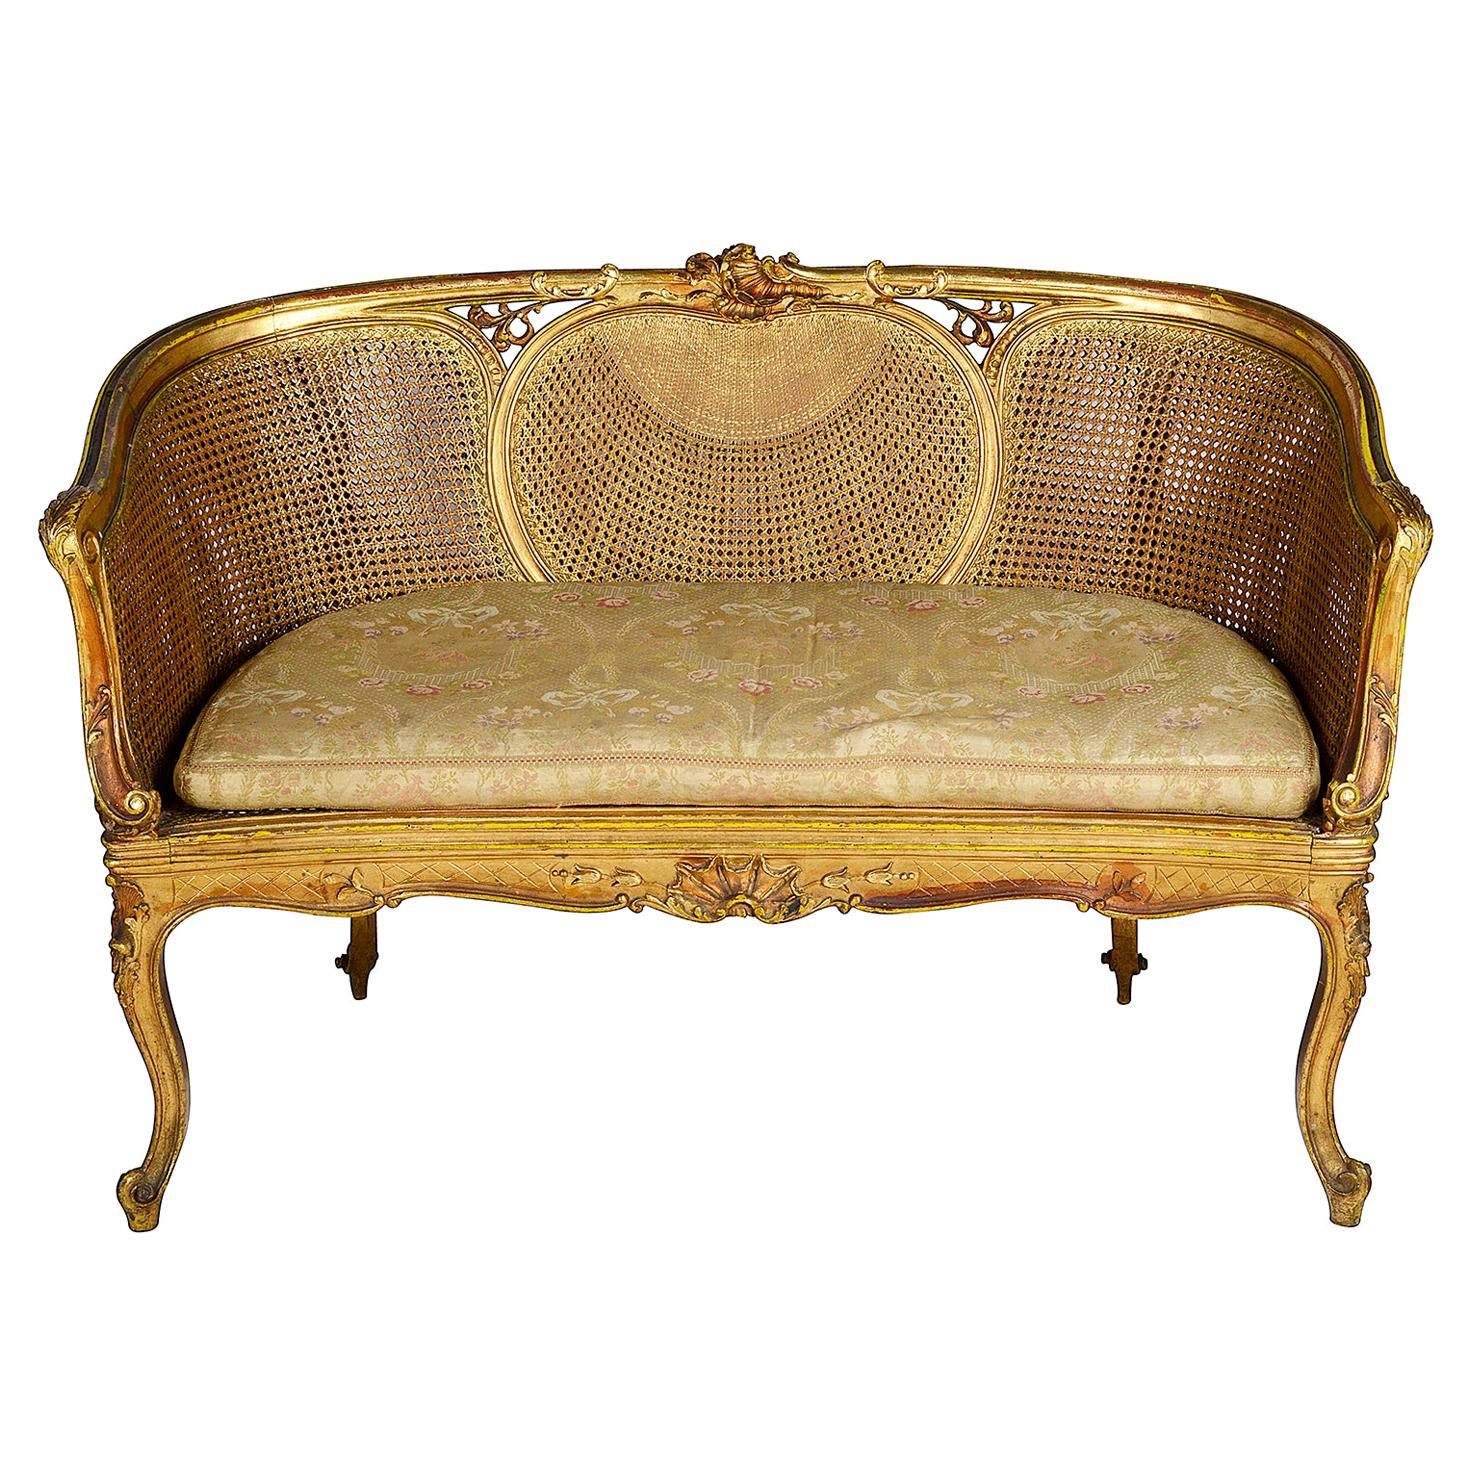 Louis XVI Style Gilded Two-Seat Sofa, circa 1900